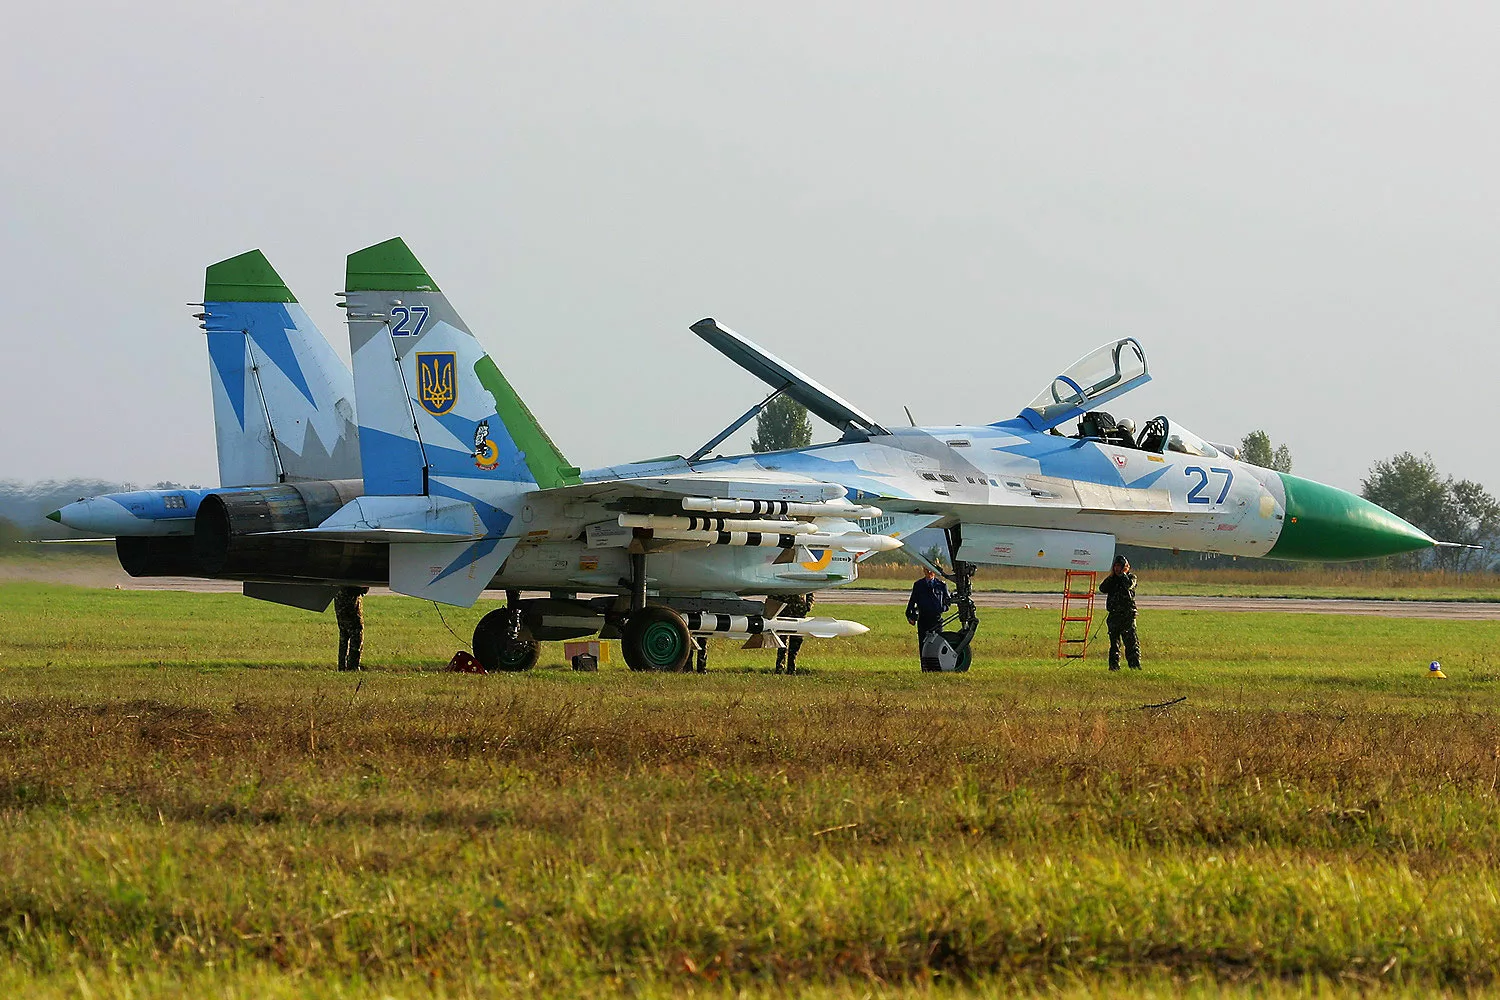 Ukrainian Air Force Su-27 fighter